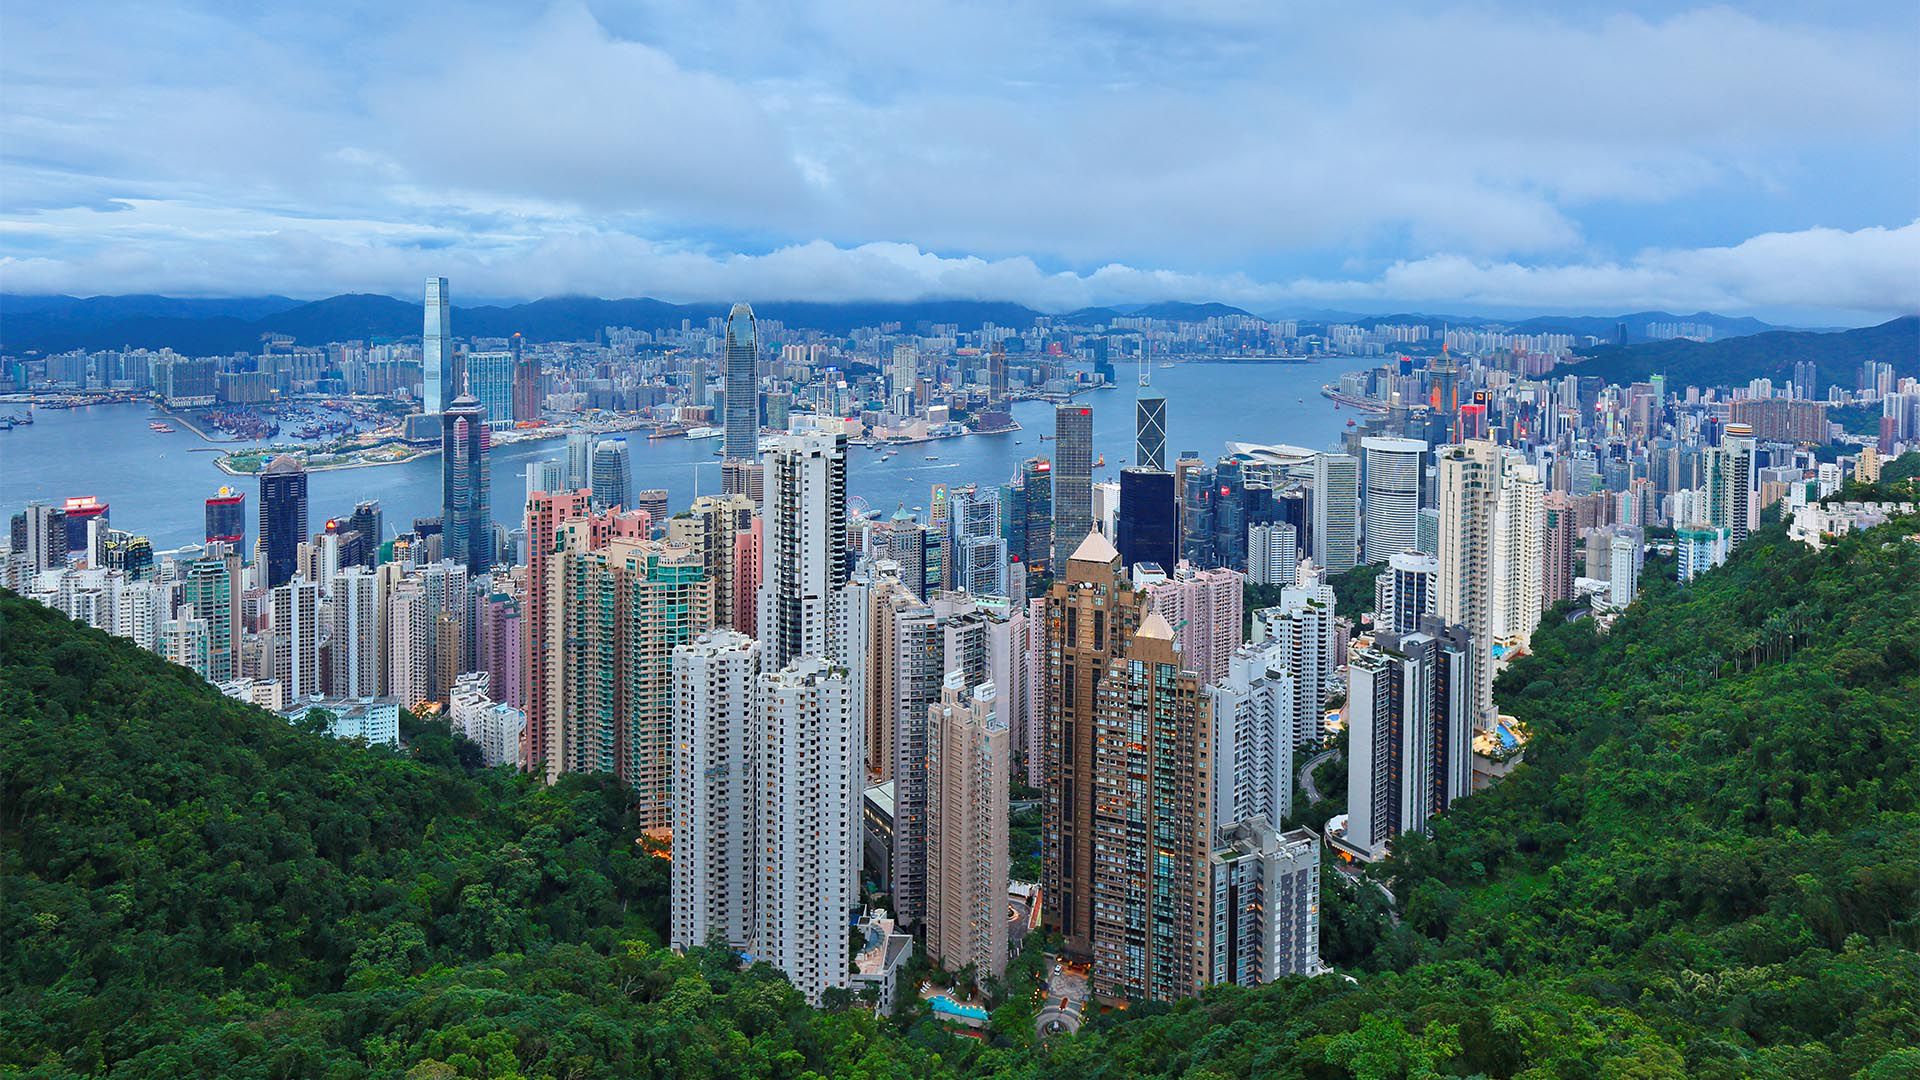 Con un estado tan densamente poblado como Hong Kong , puede sorprender que la tasa de criminalidad sea una de las más bajas del mundo